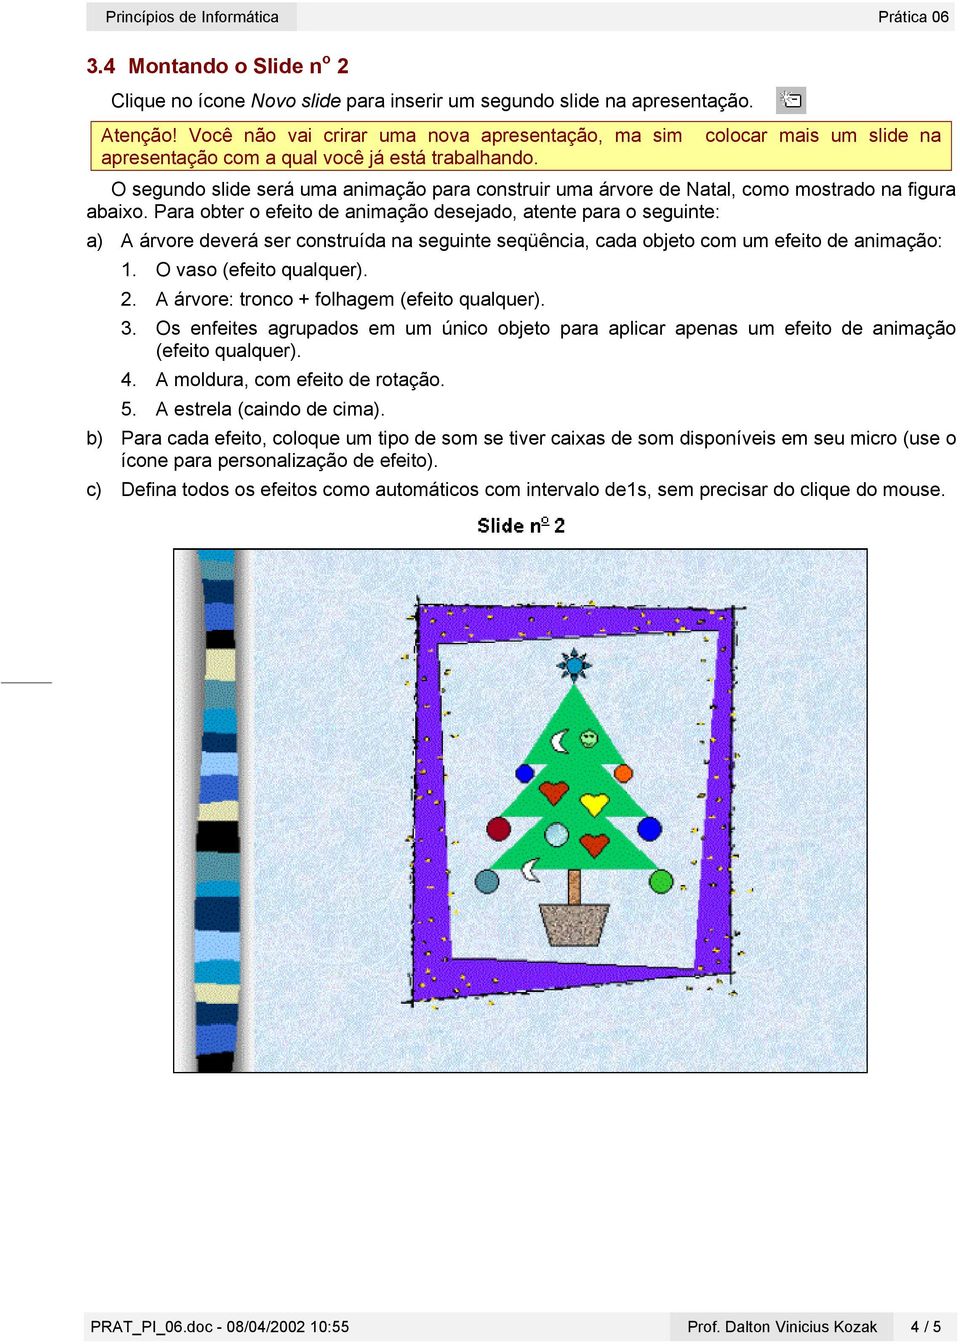 O segundo slide será uma animação para construir uma árvore de Natal, como mostrado na figura abaixo.